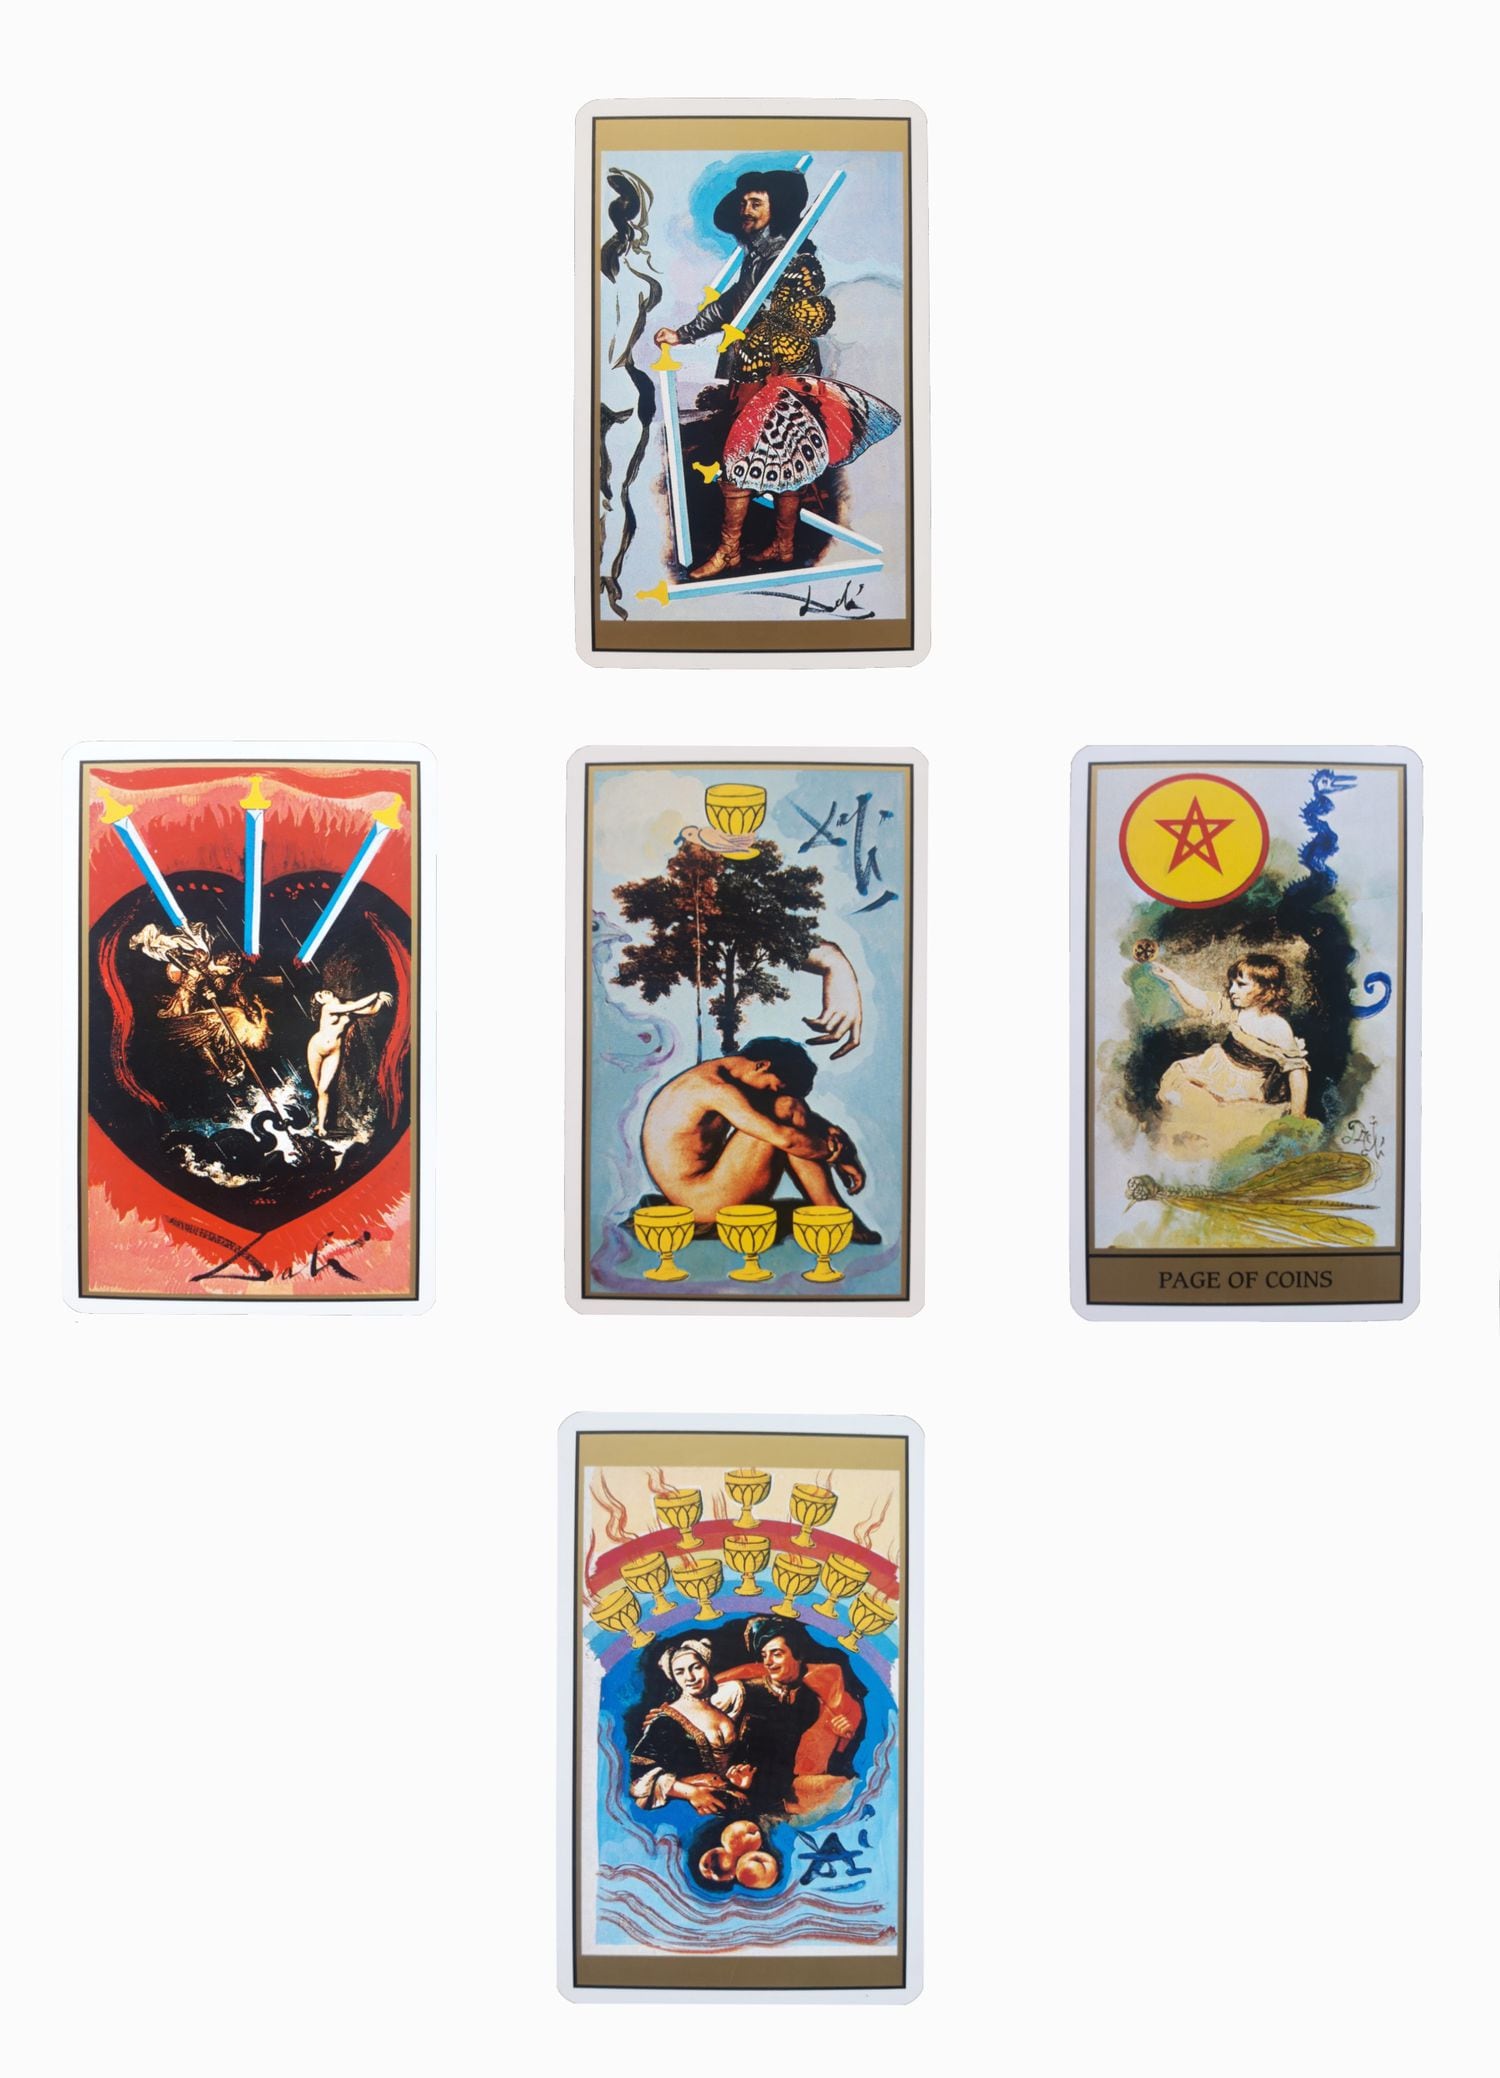 As cinco cartas do baralho de tarô de Dalí que saíram no nosso jogo.